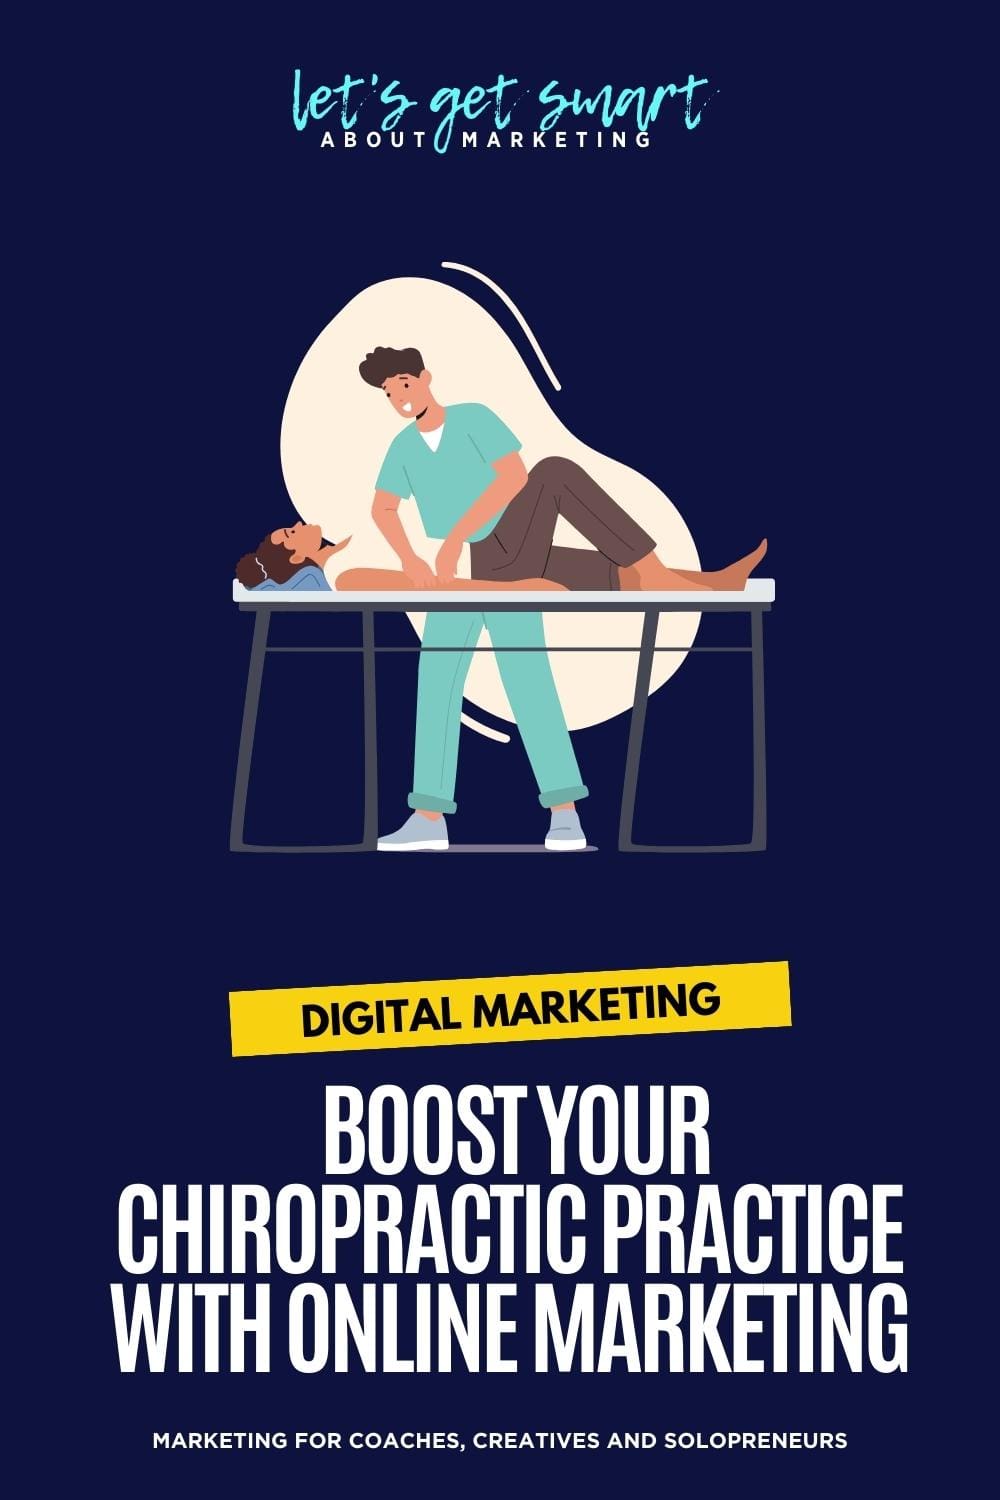 Enhancing Your Chiropractic Practice Through Online Marketing